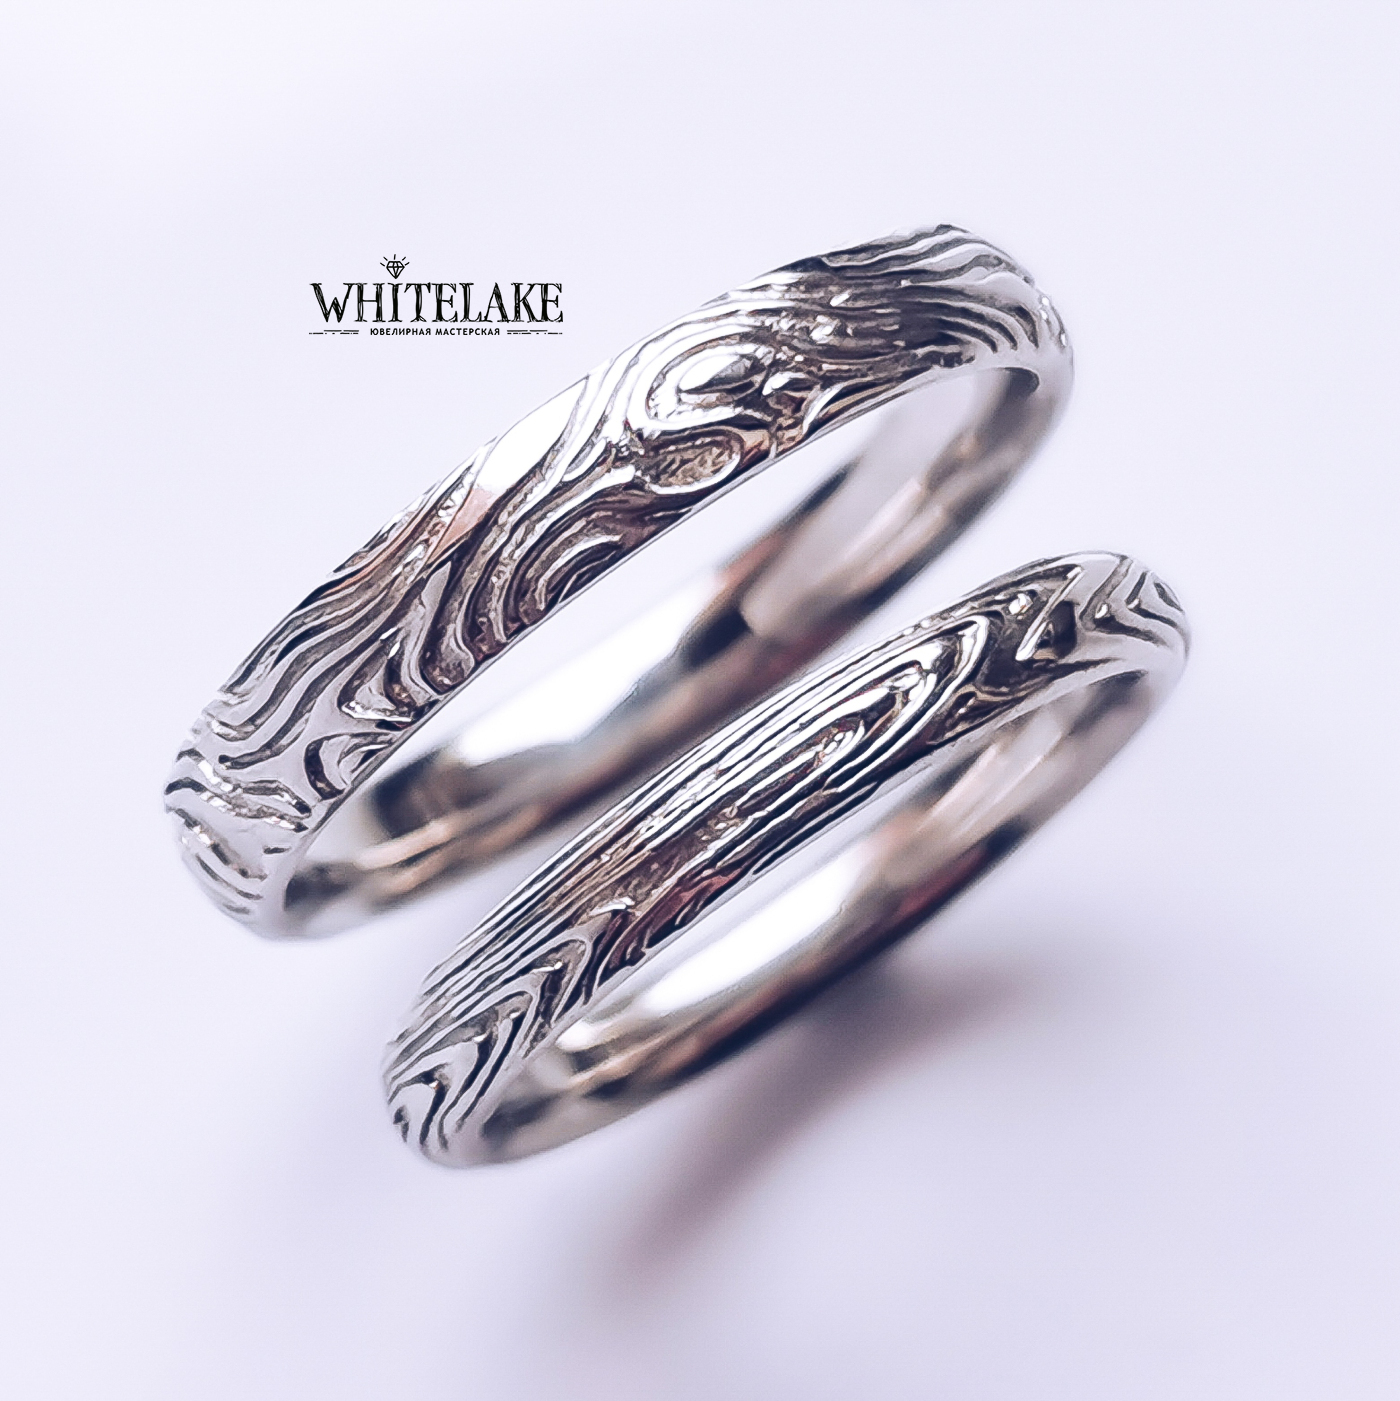 Обручальные кольца Мокуме Гане - купить в ювелирной мастерской Whitelake